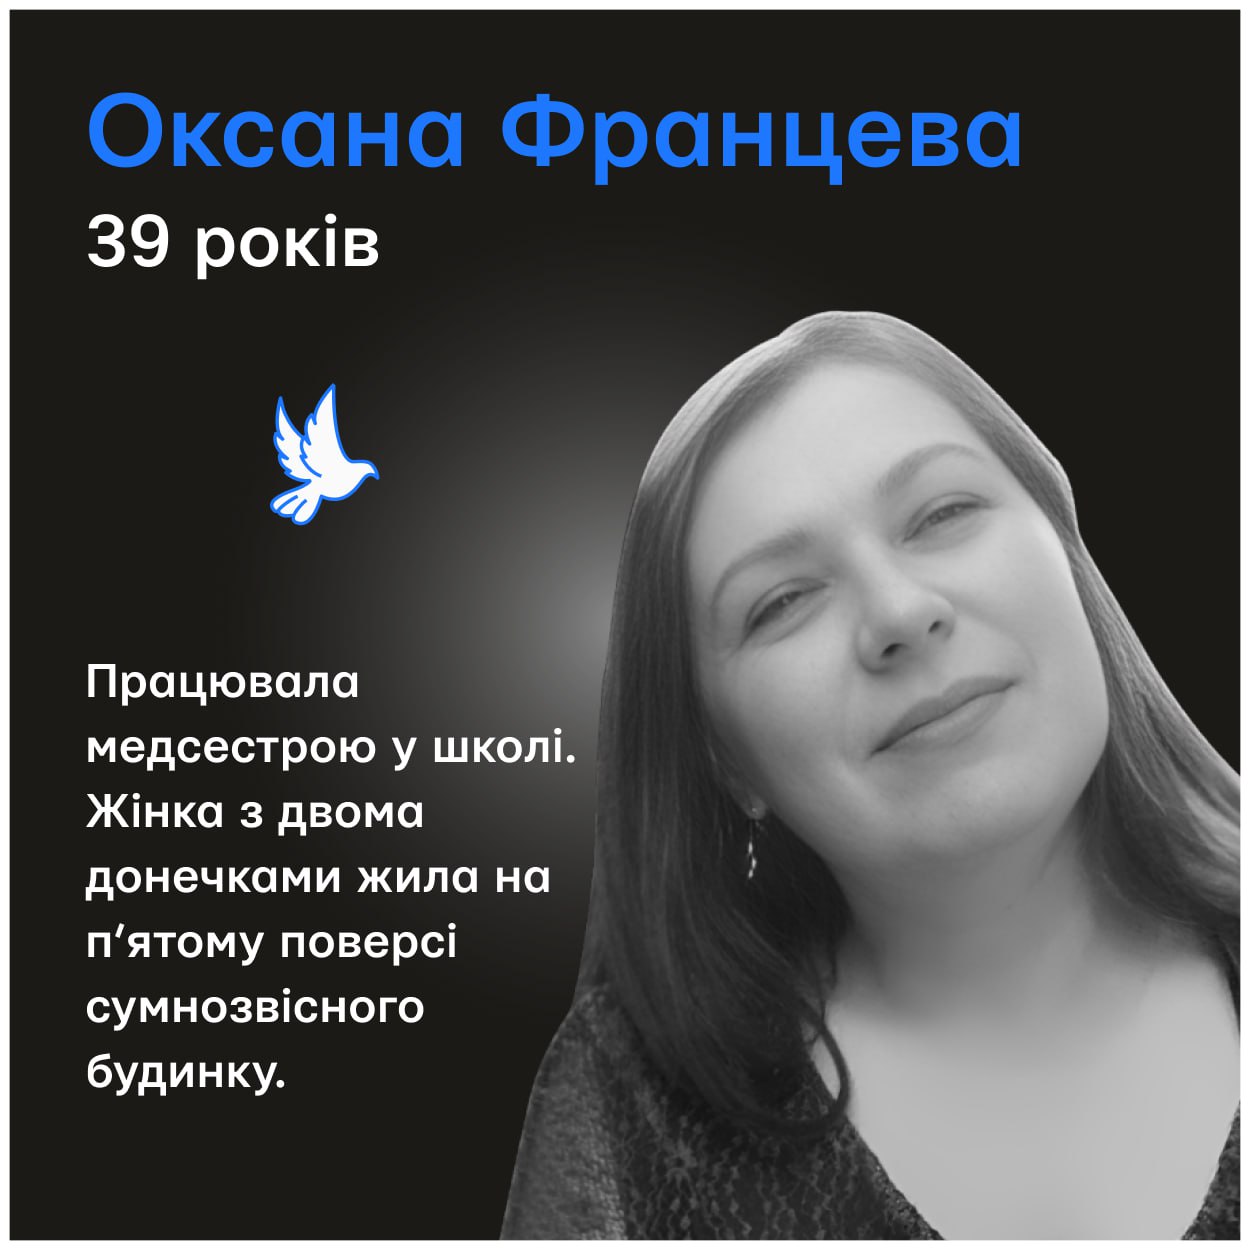 Оксана погибла в результате ракетной атаки - || фото: t.me/memorial_ukraine